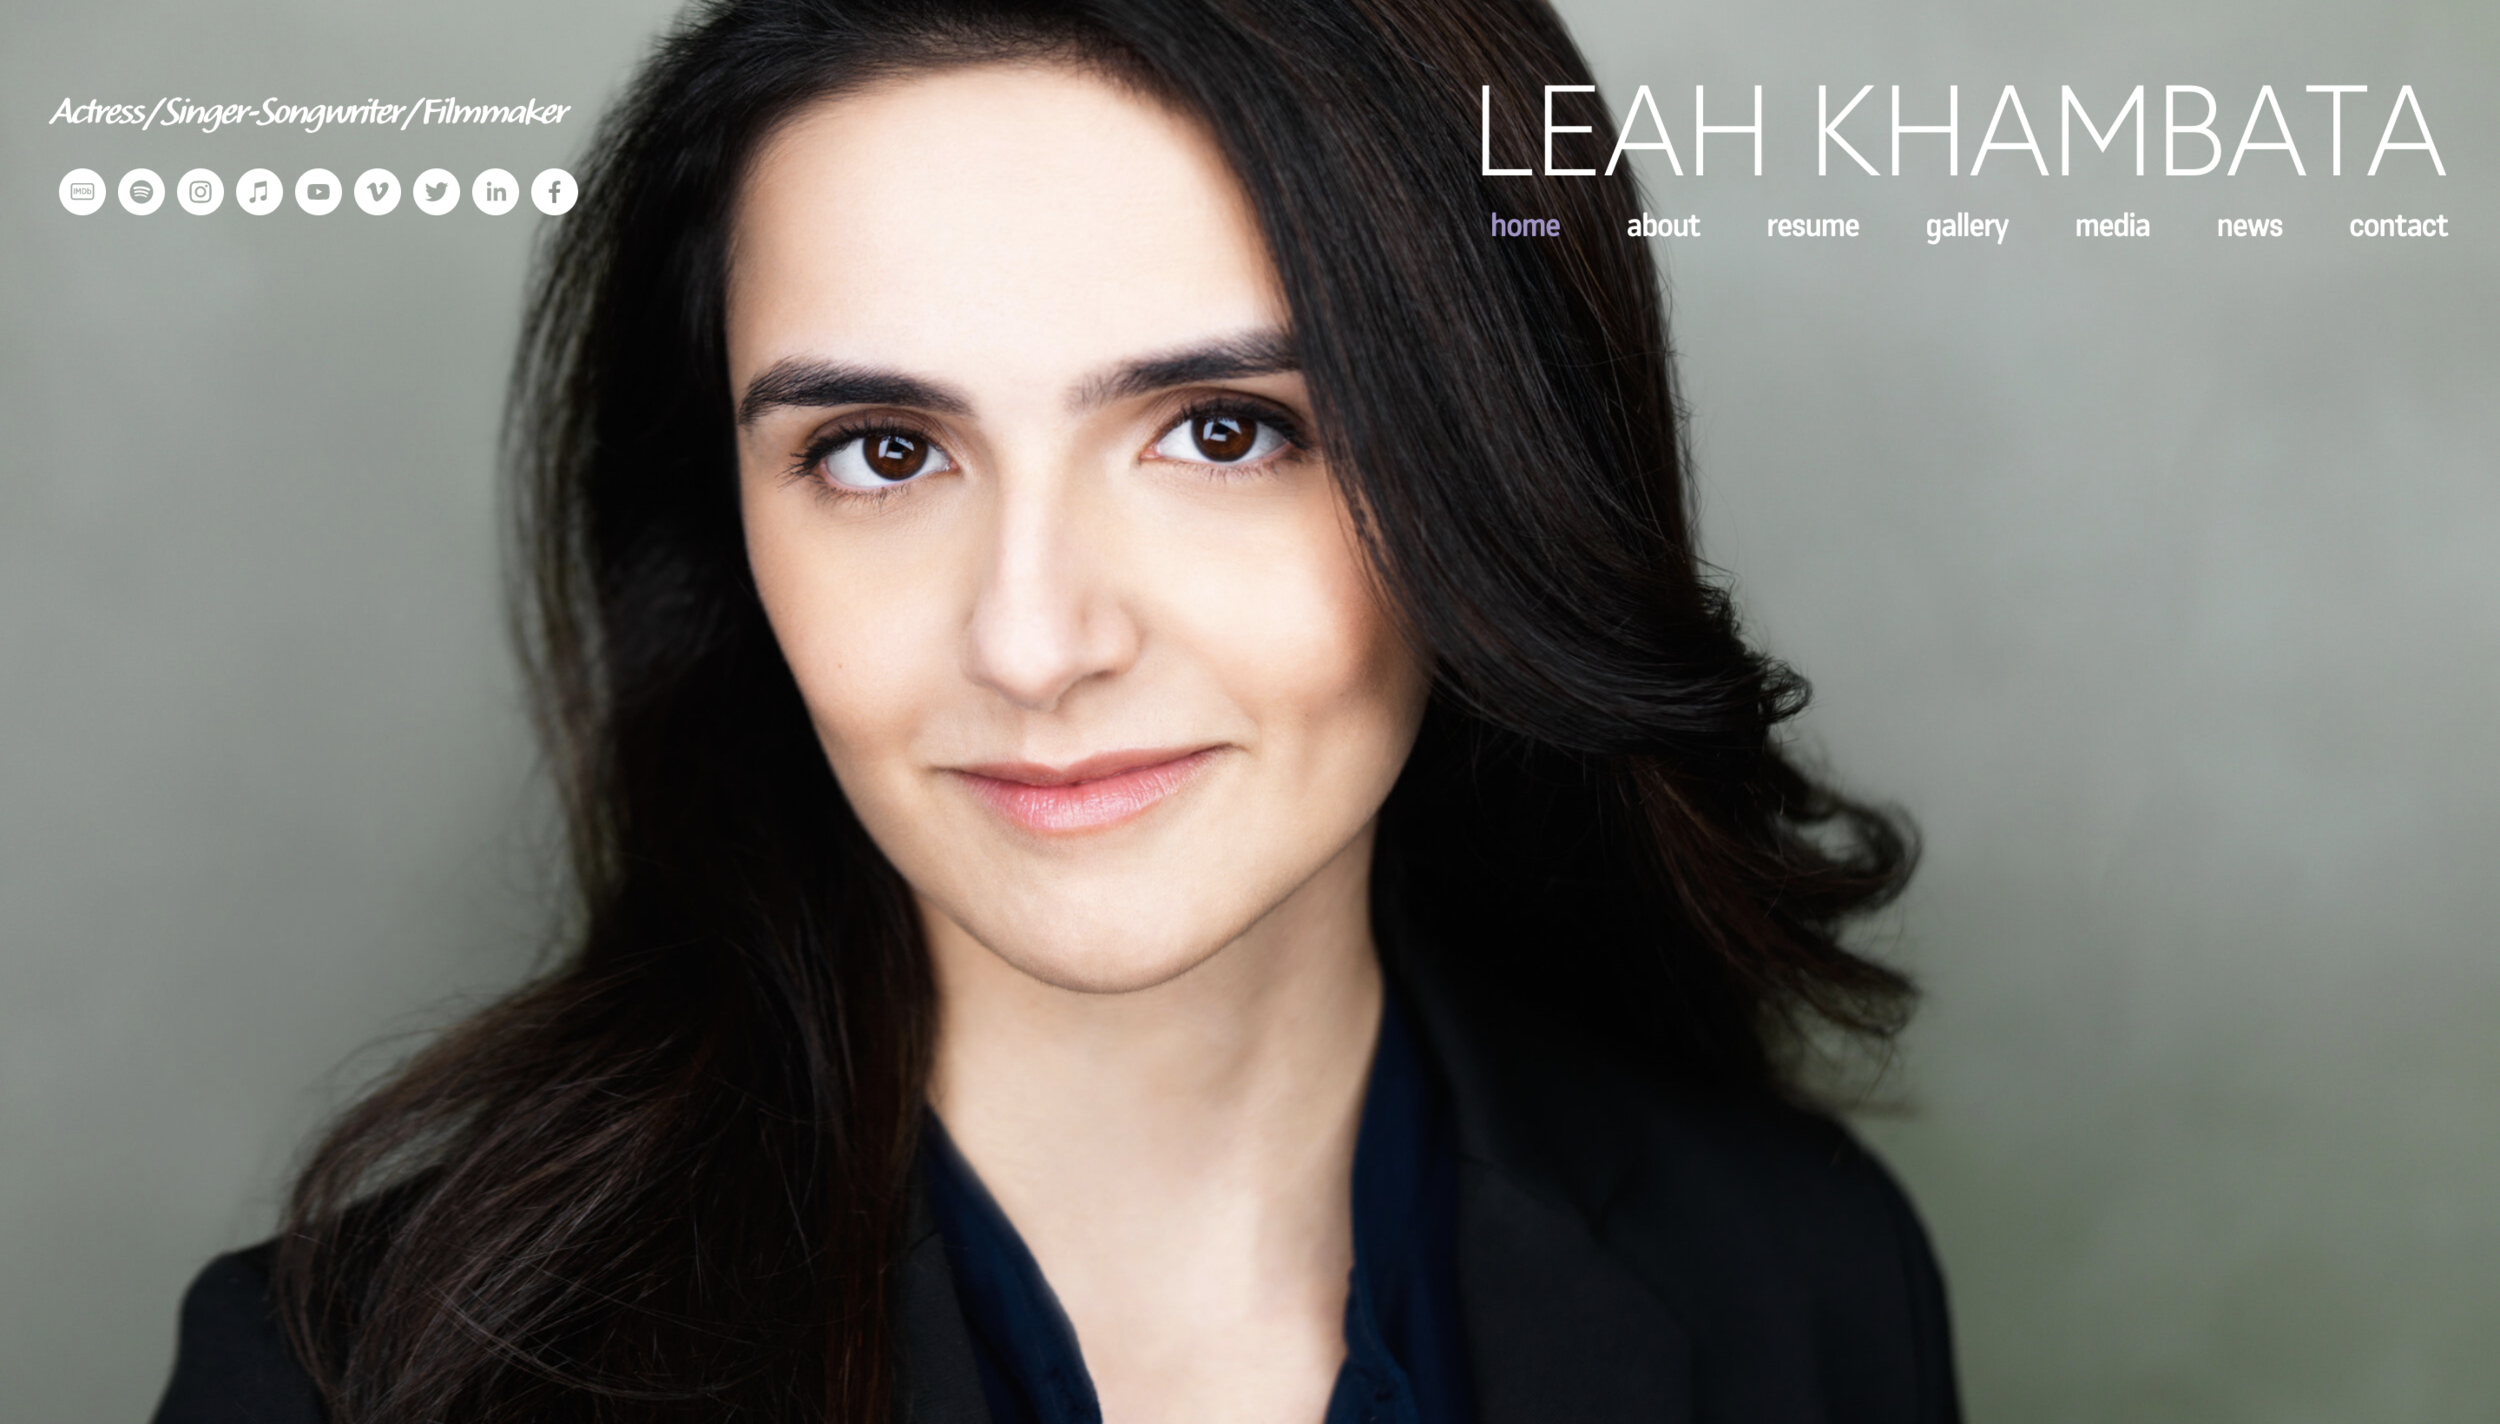 Leah Khambata